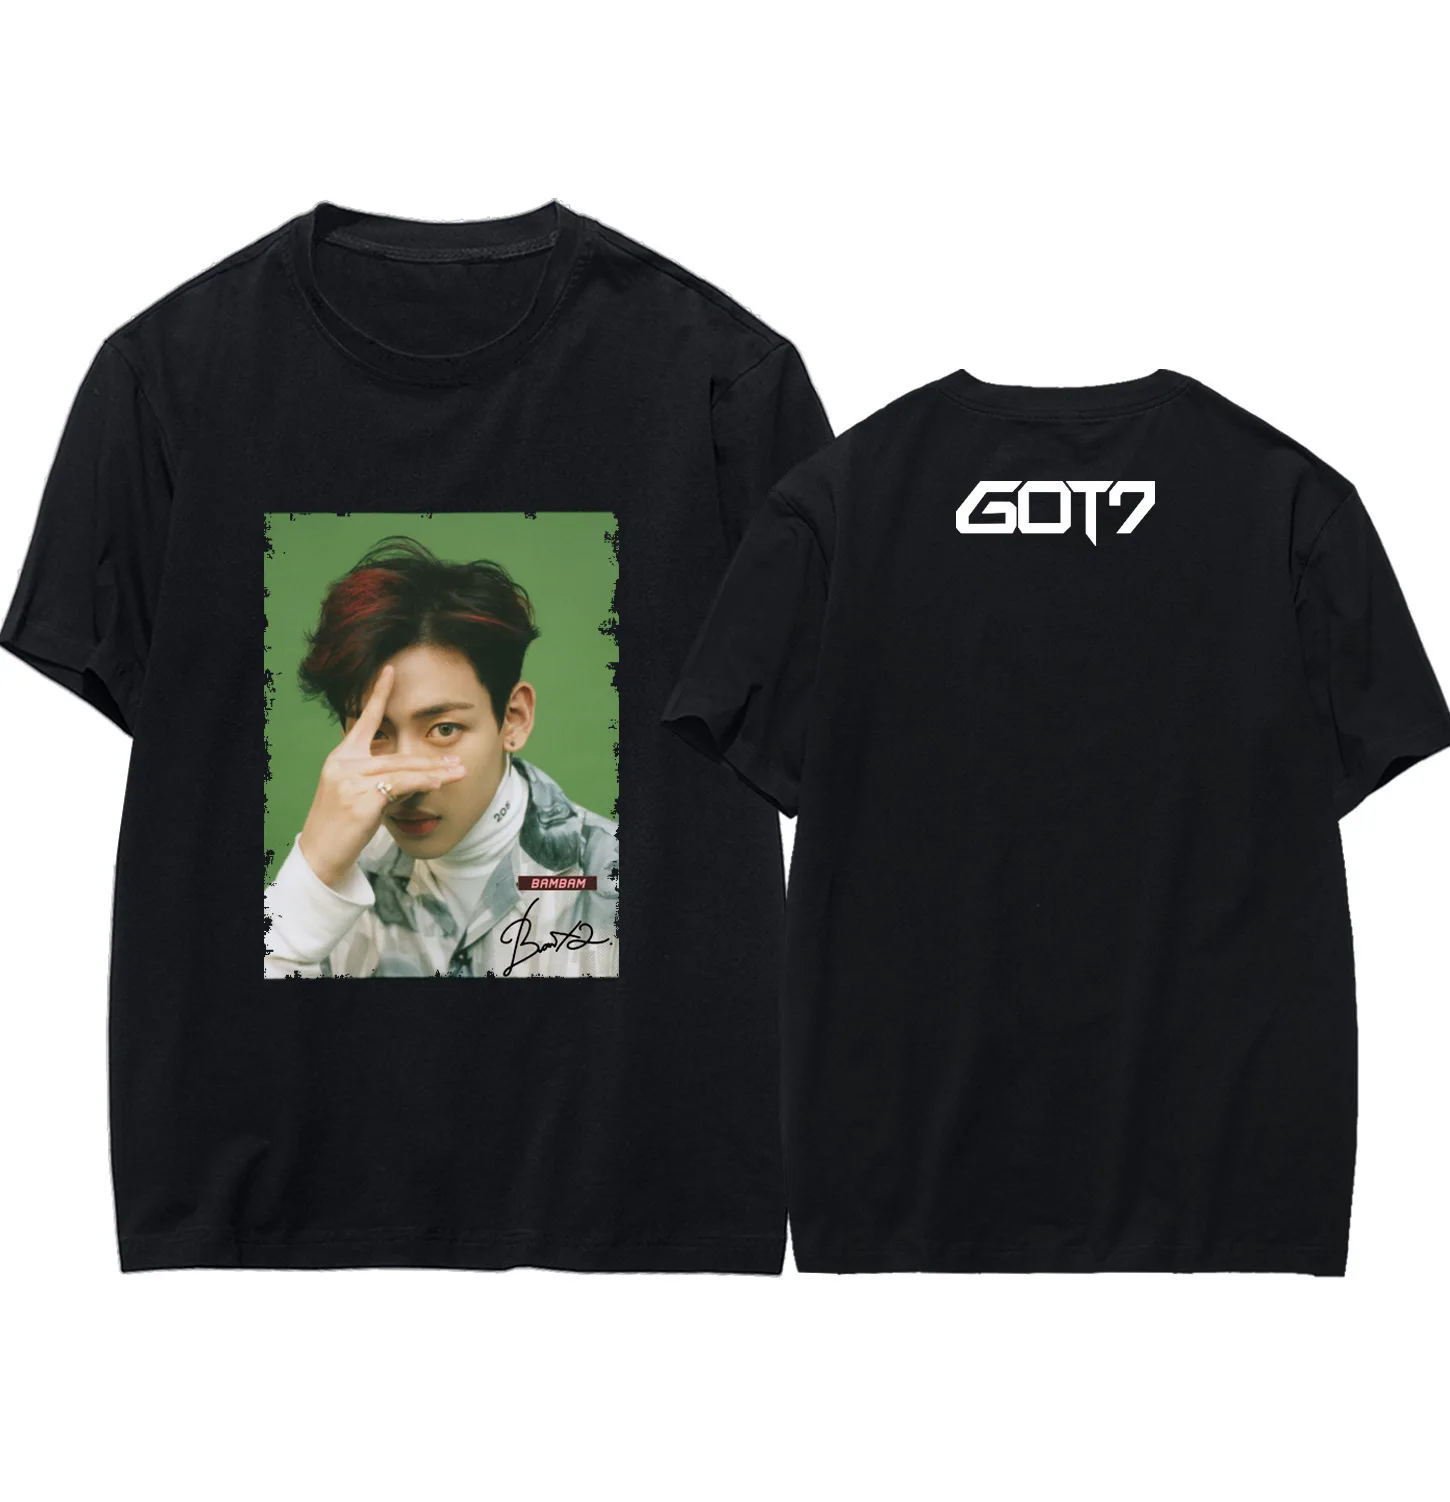 Got7 All Members T-Shirt (Official)